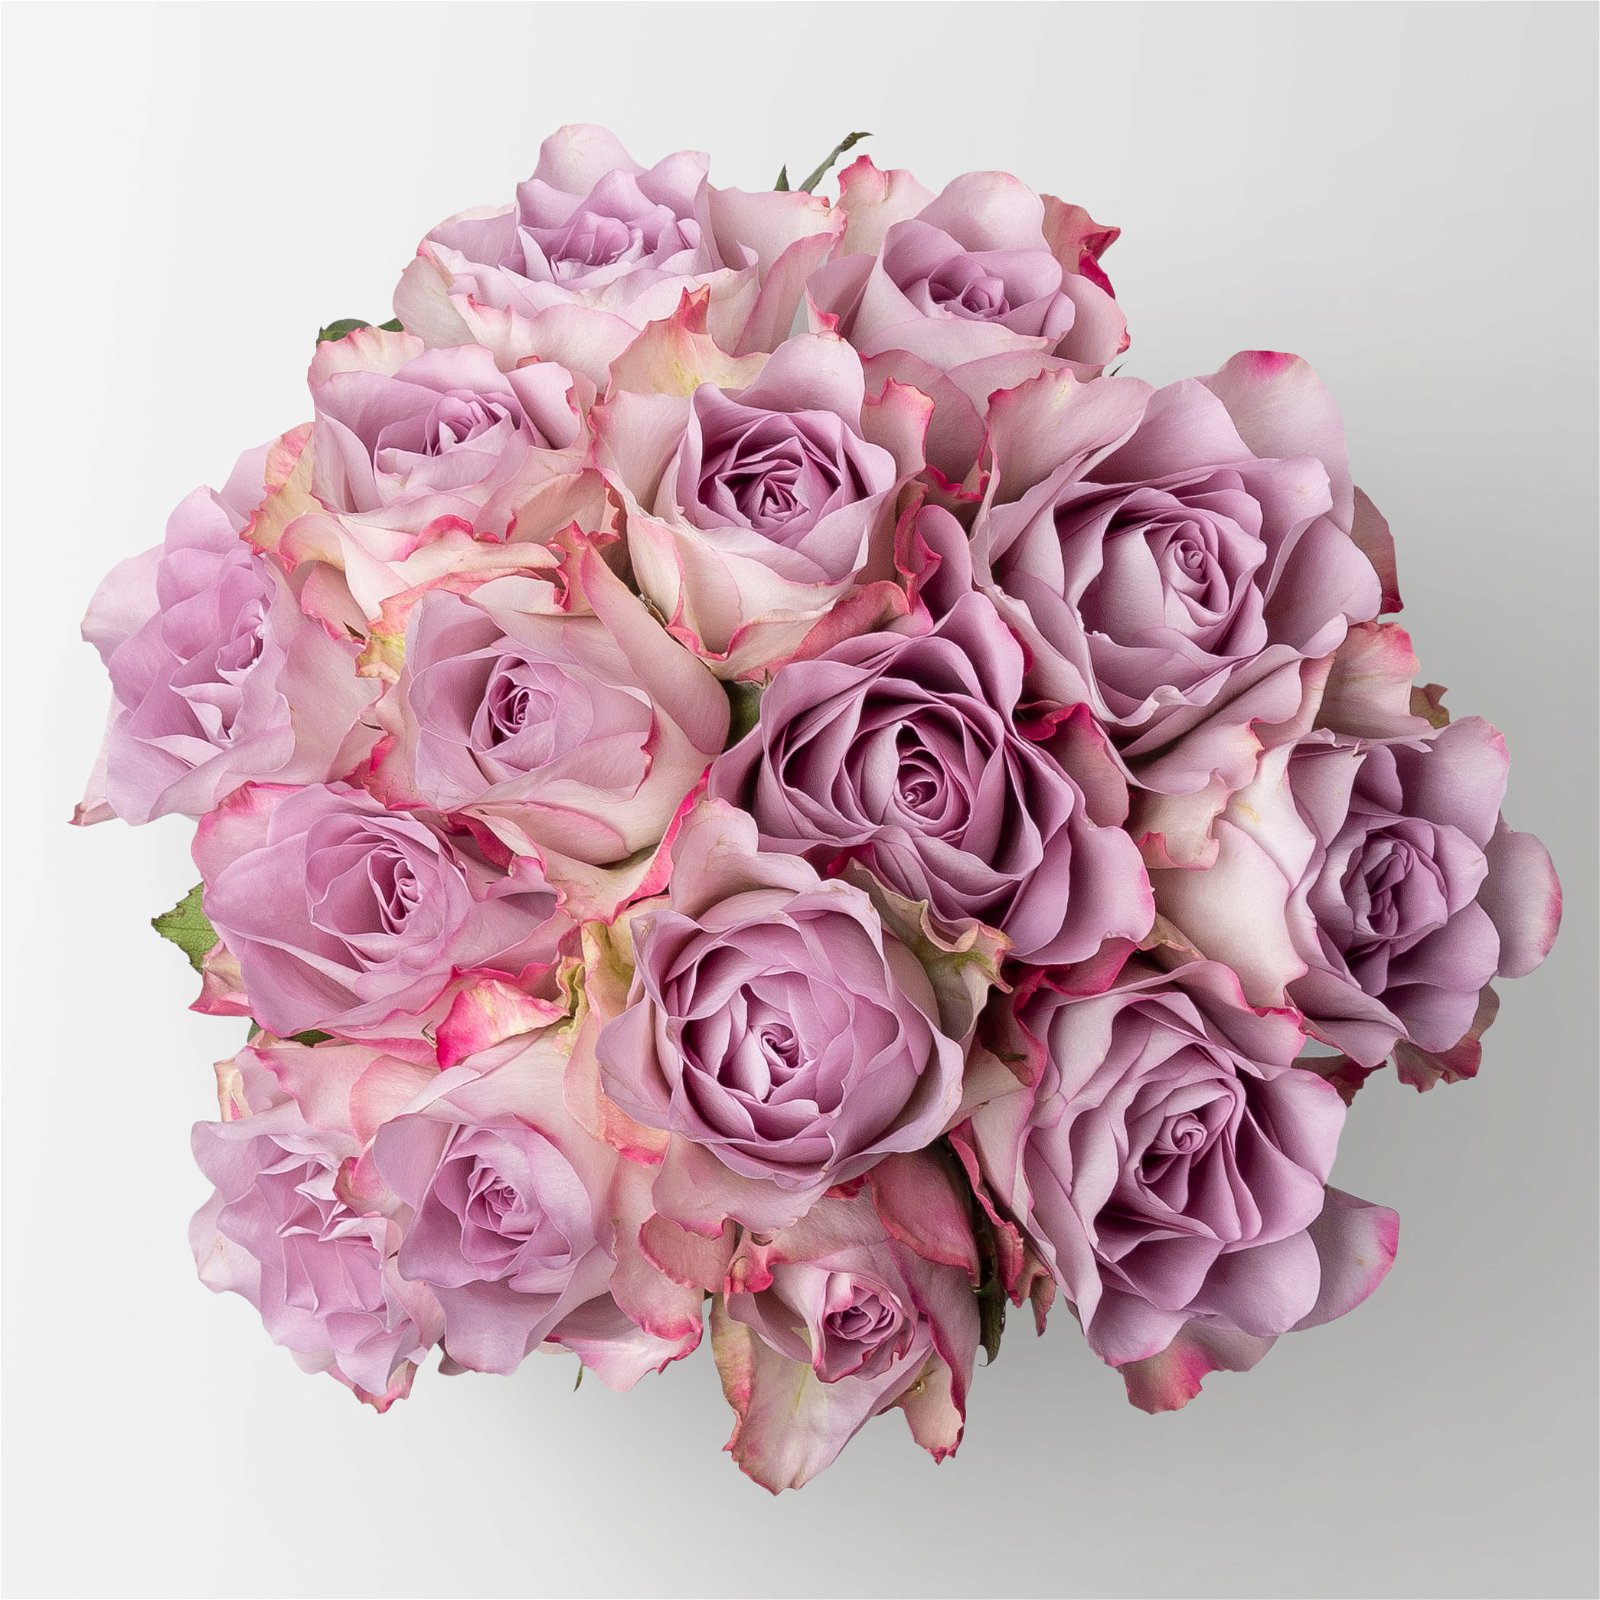 Blumenbund mit Rosen %27Memory Lane%27, lila, 15er-Bund, inkl. gratis Grußkarte